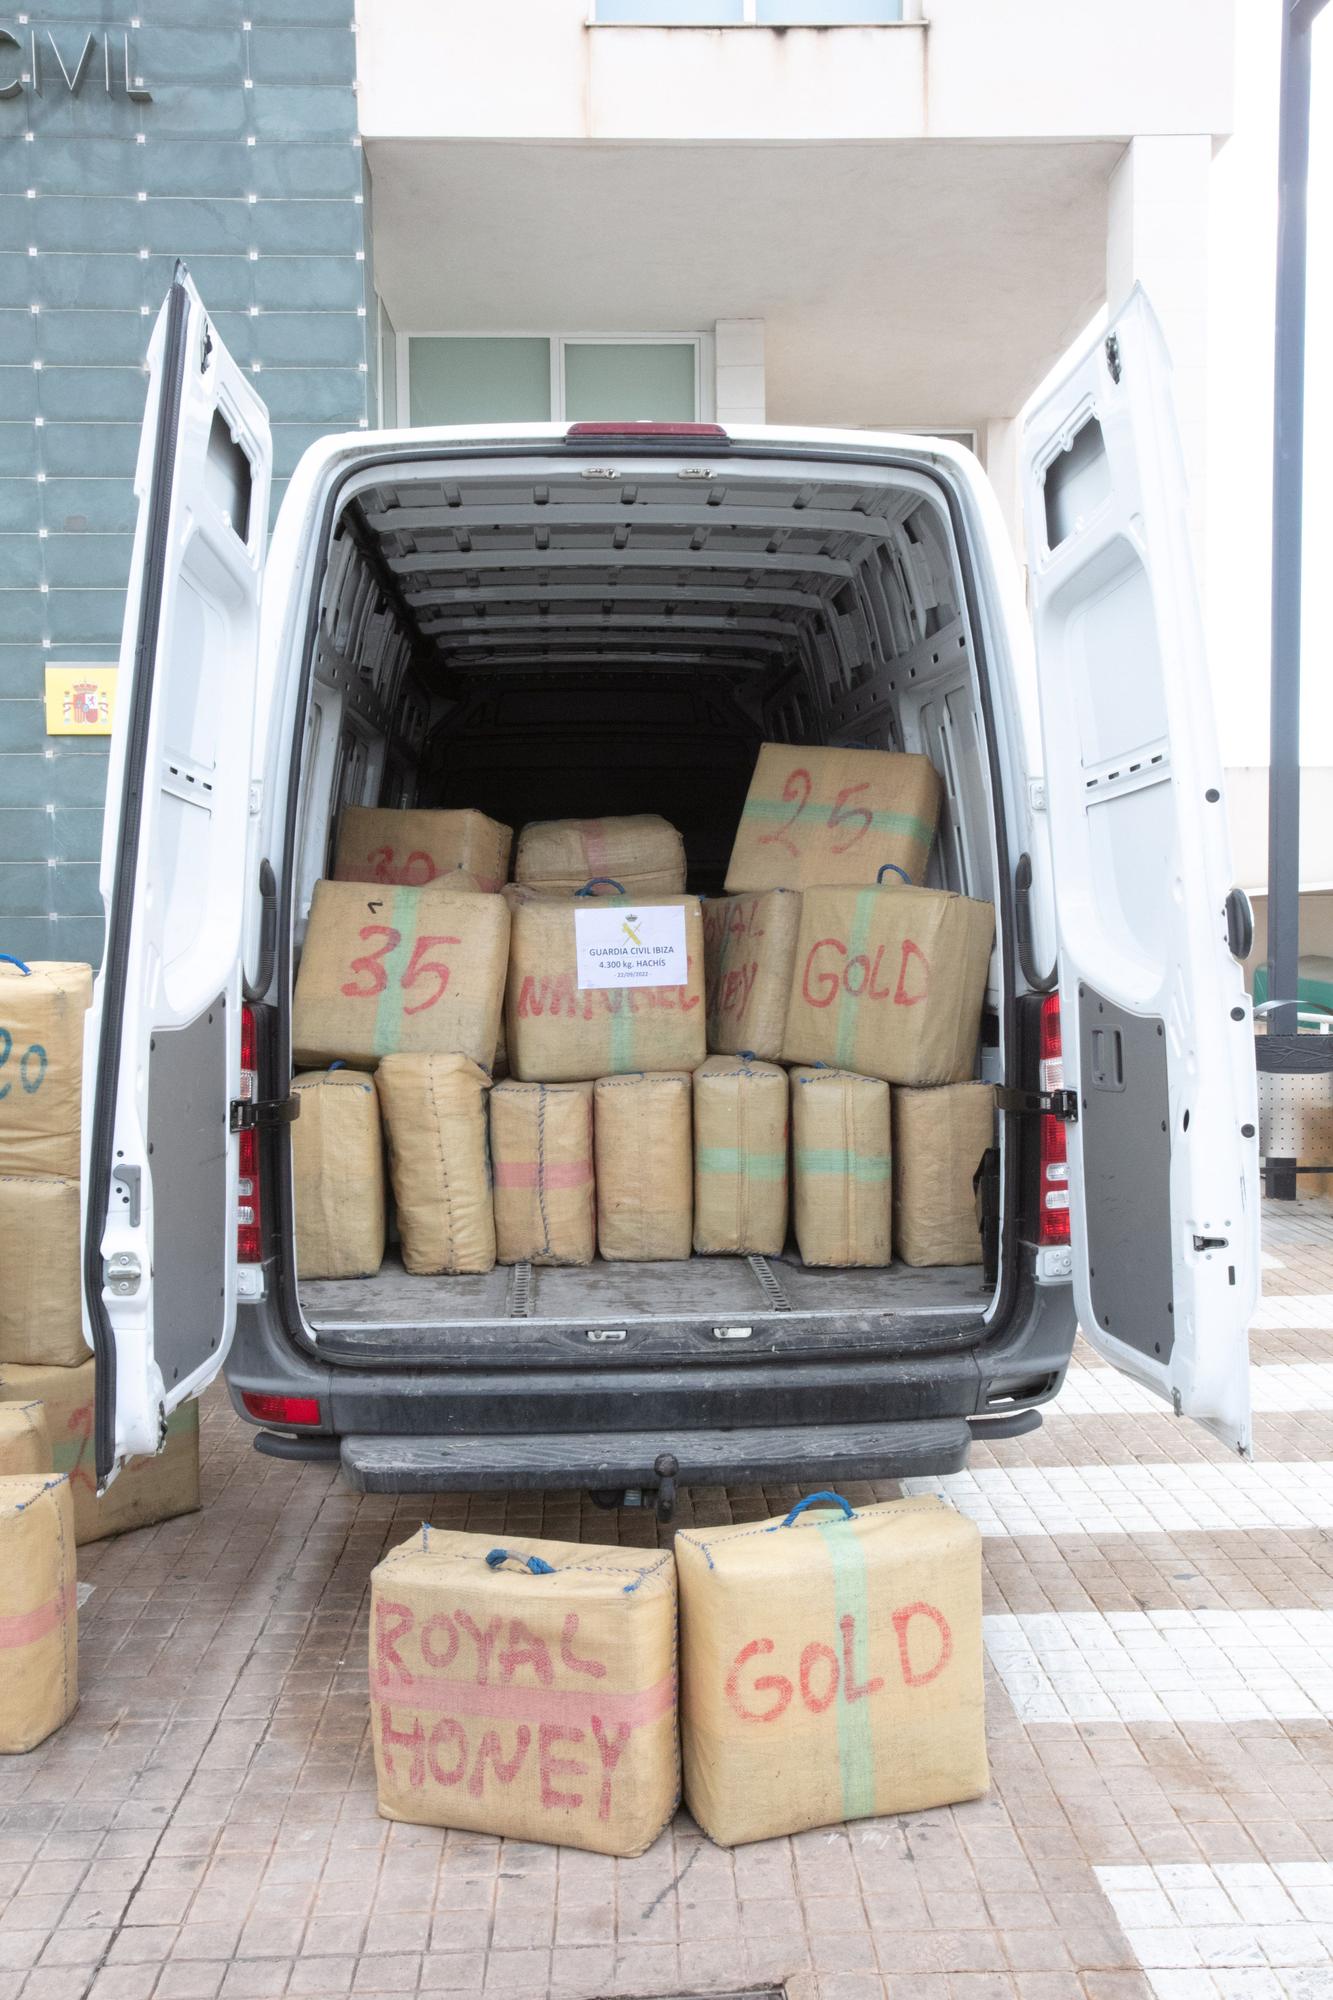 Incautados 4.300 kilos de hachís en un vehículo que circulaba por Ibiza